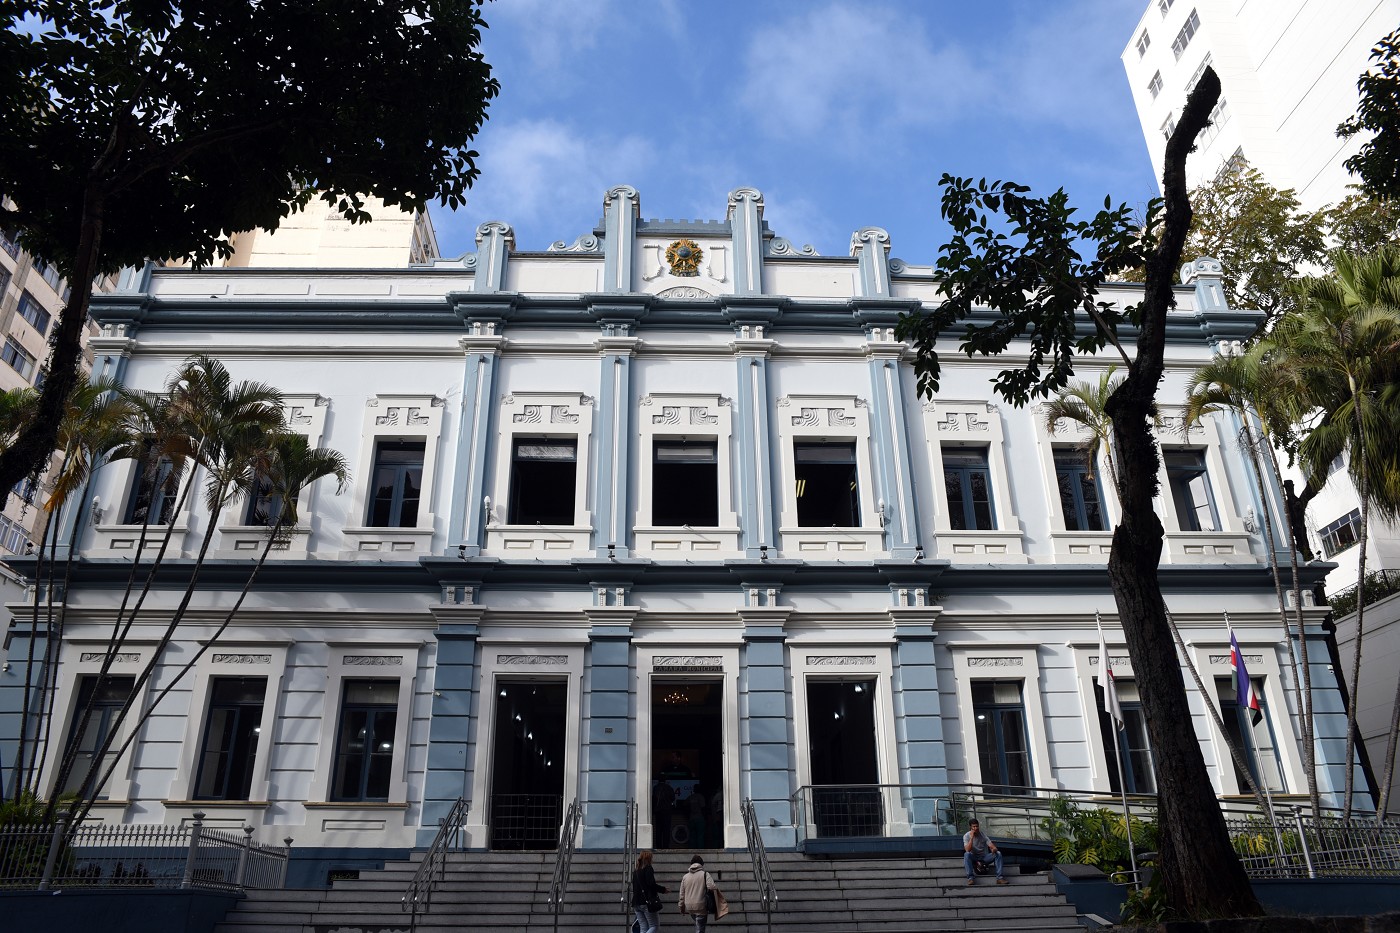 Seminário Legislativo Estatuto da Igualdade Racial de Minas Gerais -Encontro Regional Juiz de Fora